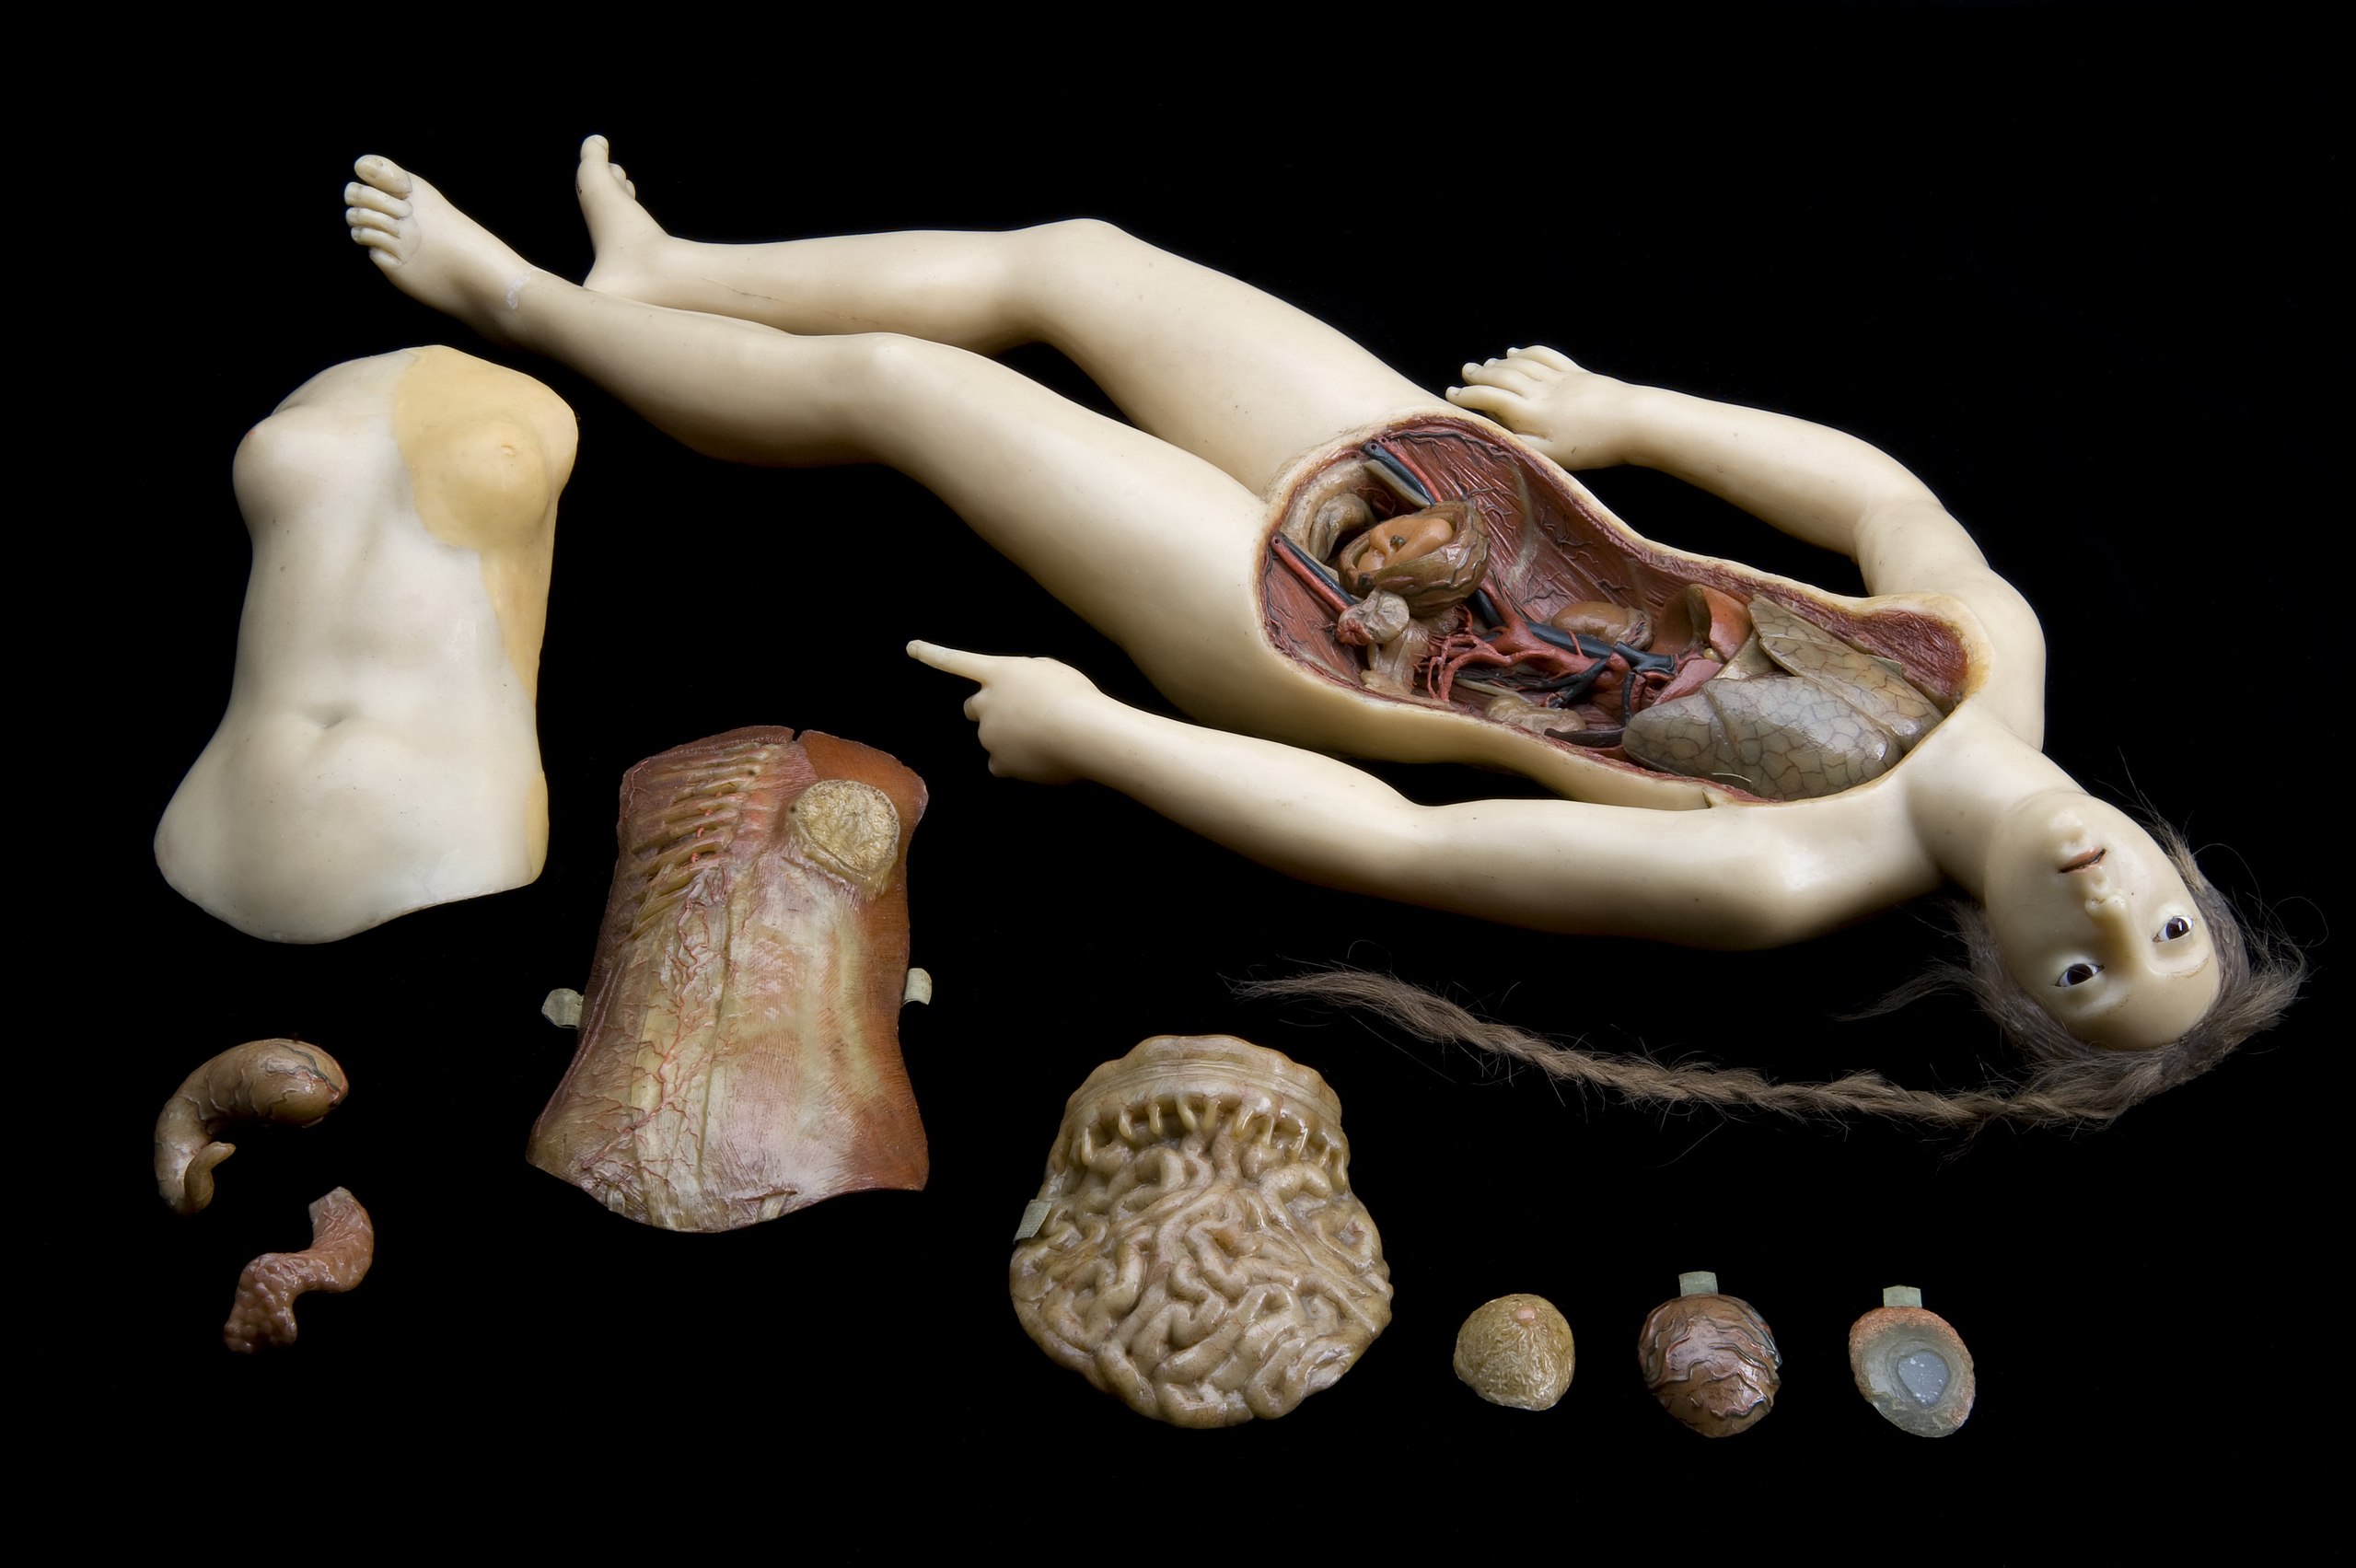 Cire anatomique de femme allongée  (ou Vénus anatomique) avec organes internes amovibles, probablement de l’atelier de Clemente Susini